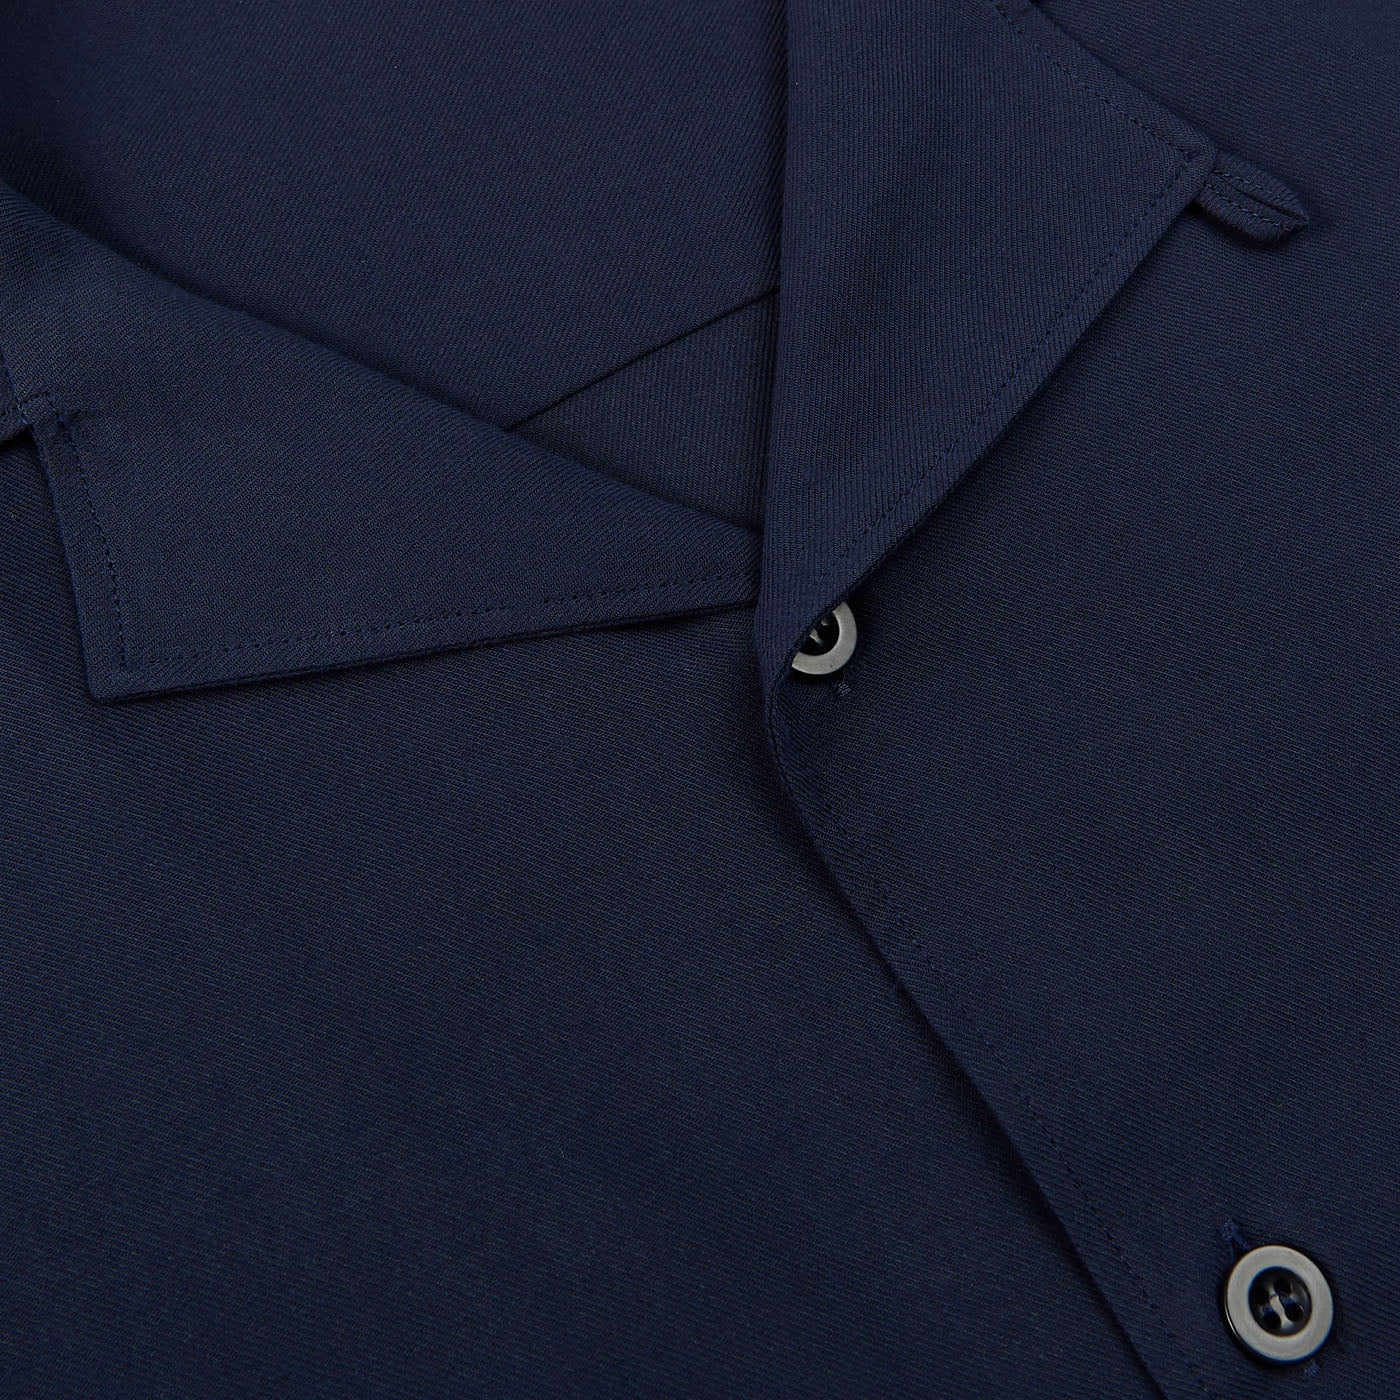 Sunspel Navy Blue Cotton Twill Pyjamas Jacket Open